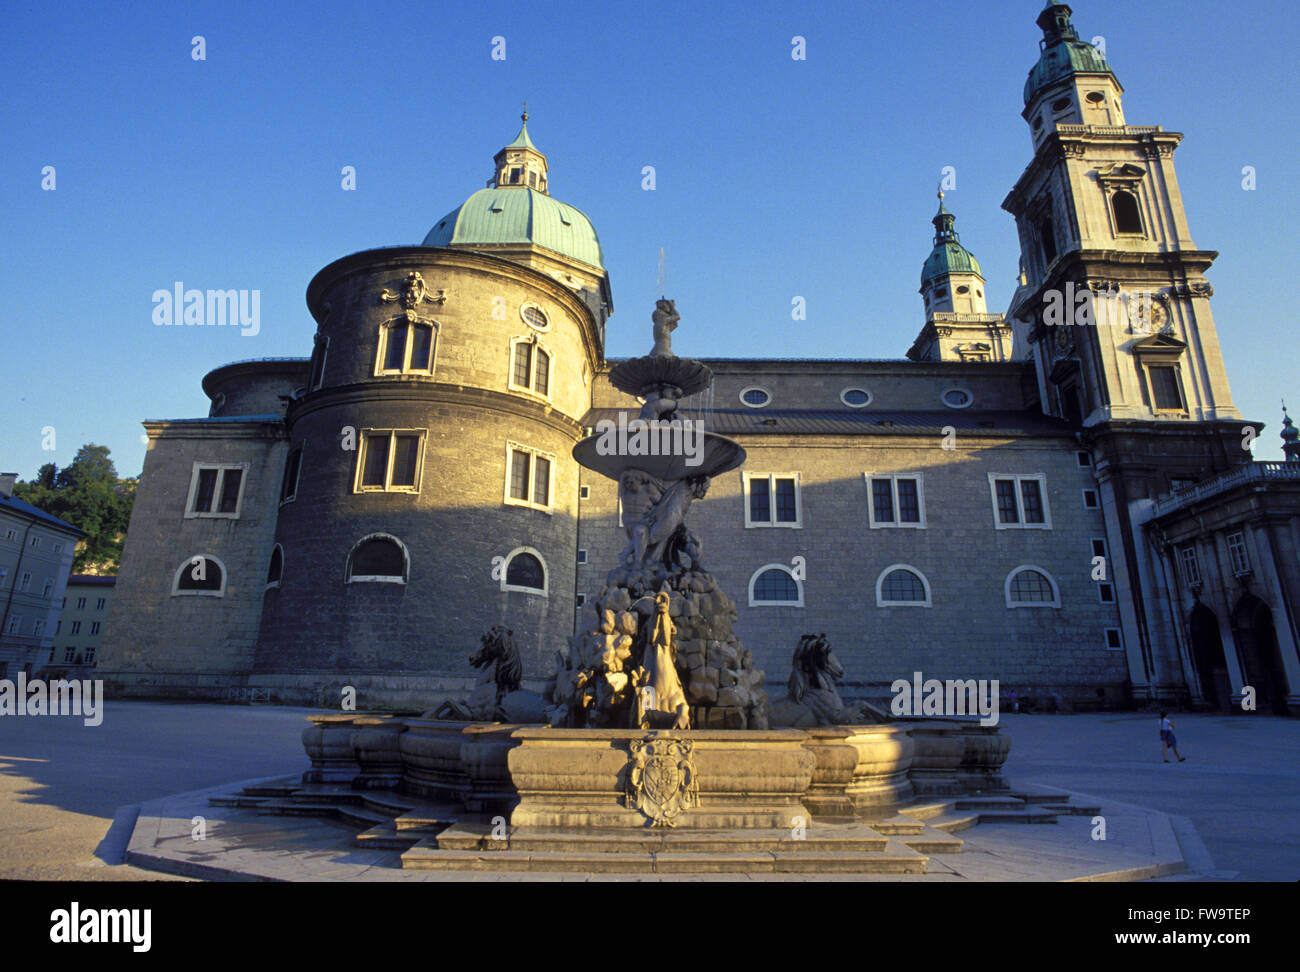 AUT, Austria, Salzburg, the cathedral and the Residenz fountain.  AUT, Oesterreich, Salzburg, der Dom und der Residenzbrunnen. Stock Photo